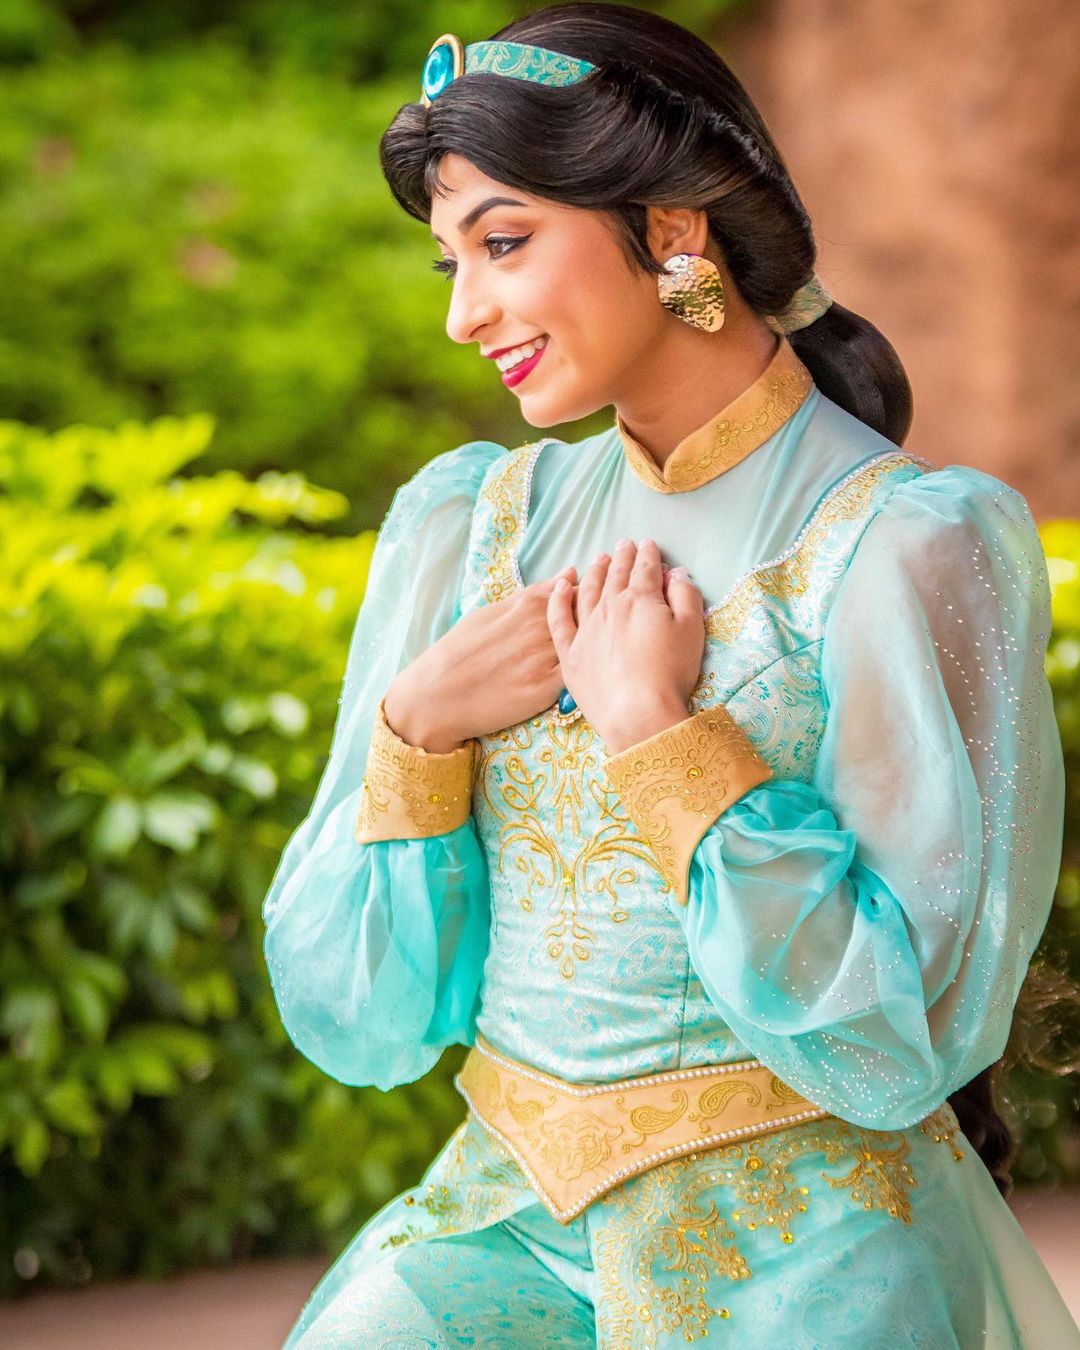 Princesa Jasmine en el Pabellón de Marruecos en Epcot para Photo